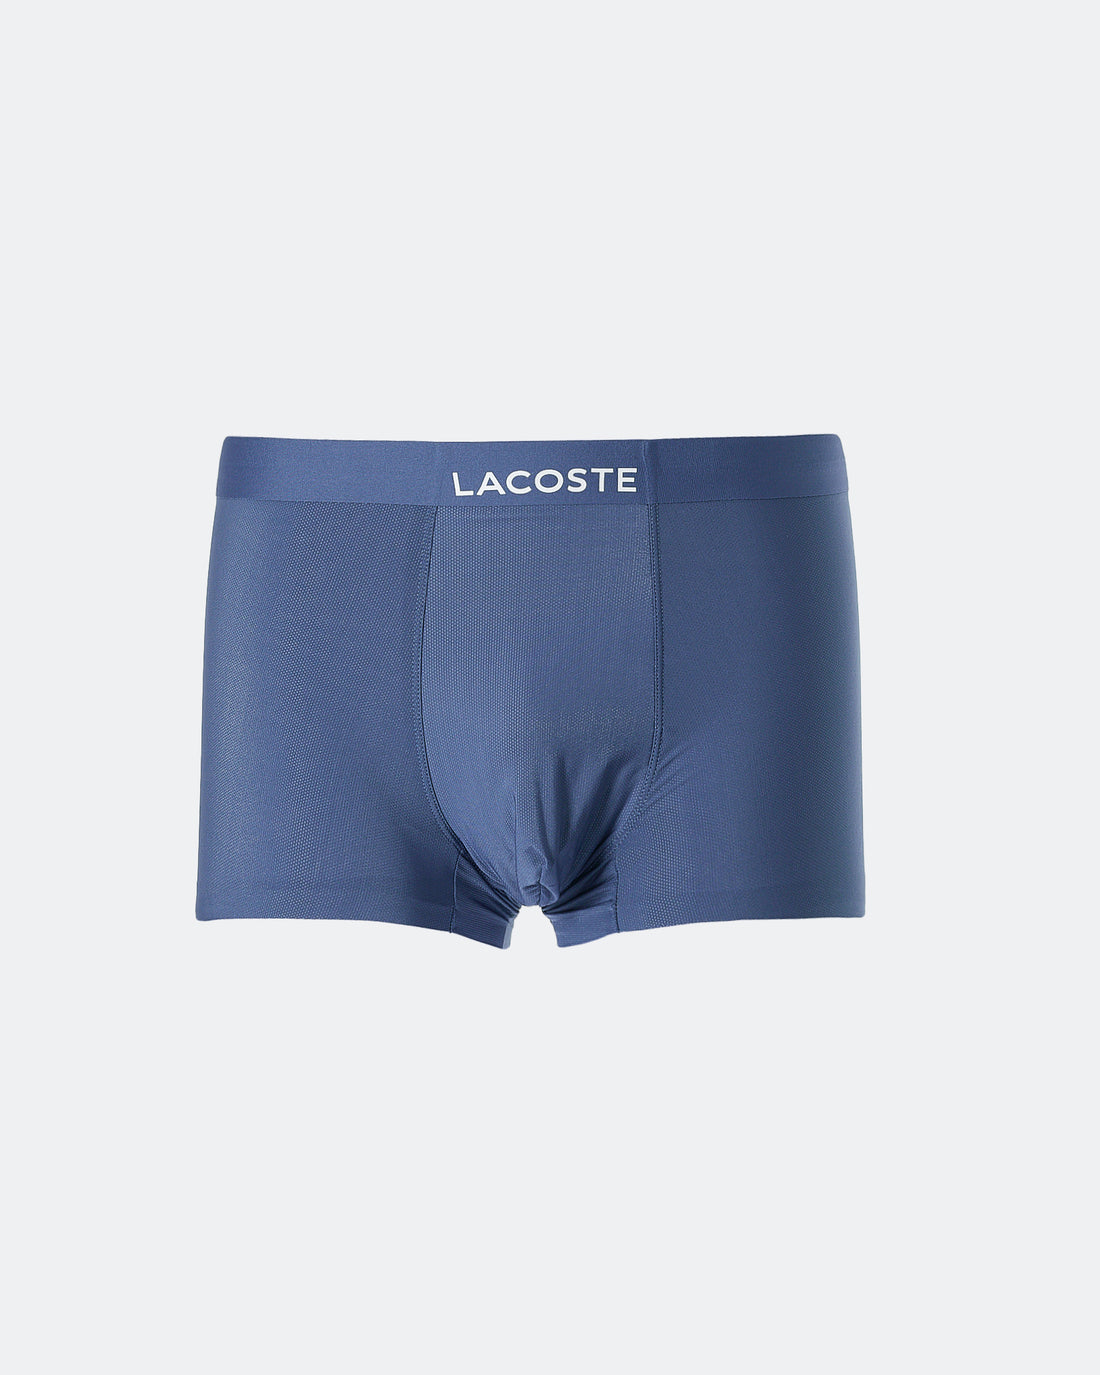 LAC Light Weight Men Blue Underwear 5.90